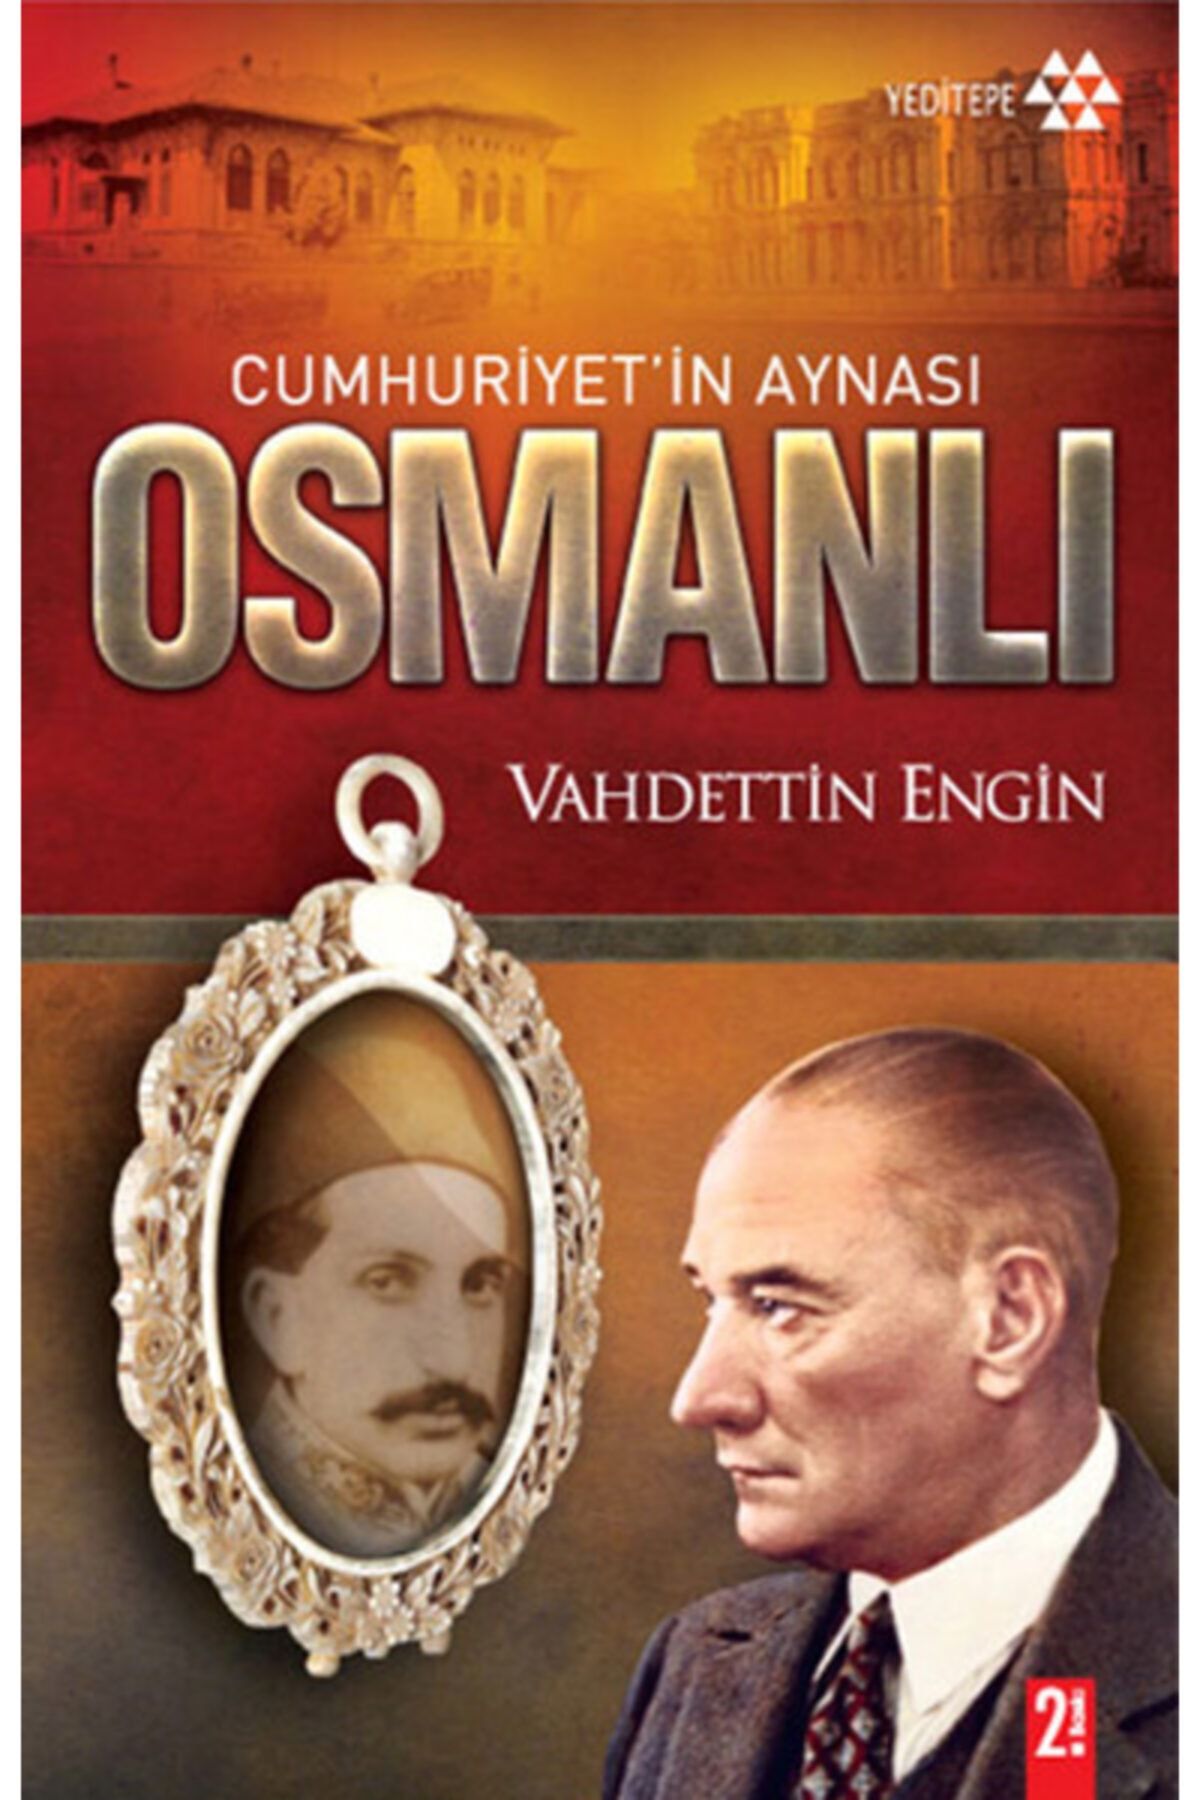 Yeditepe Yayınevi Cumhuriyetin Aynası Osmanlı